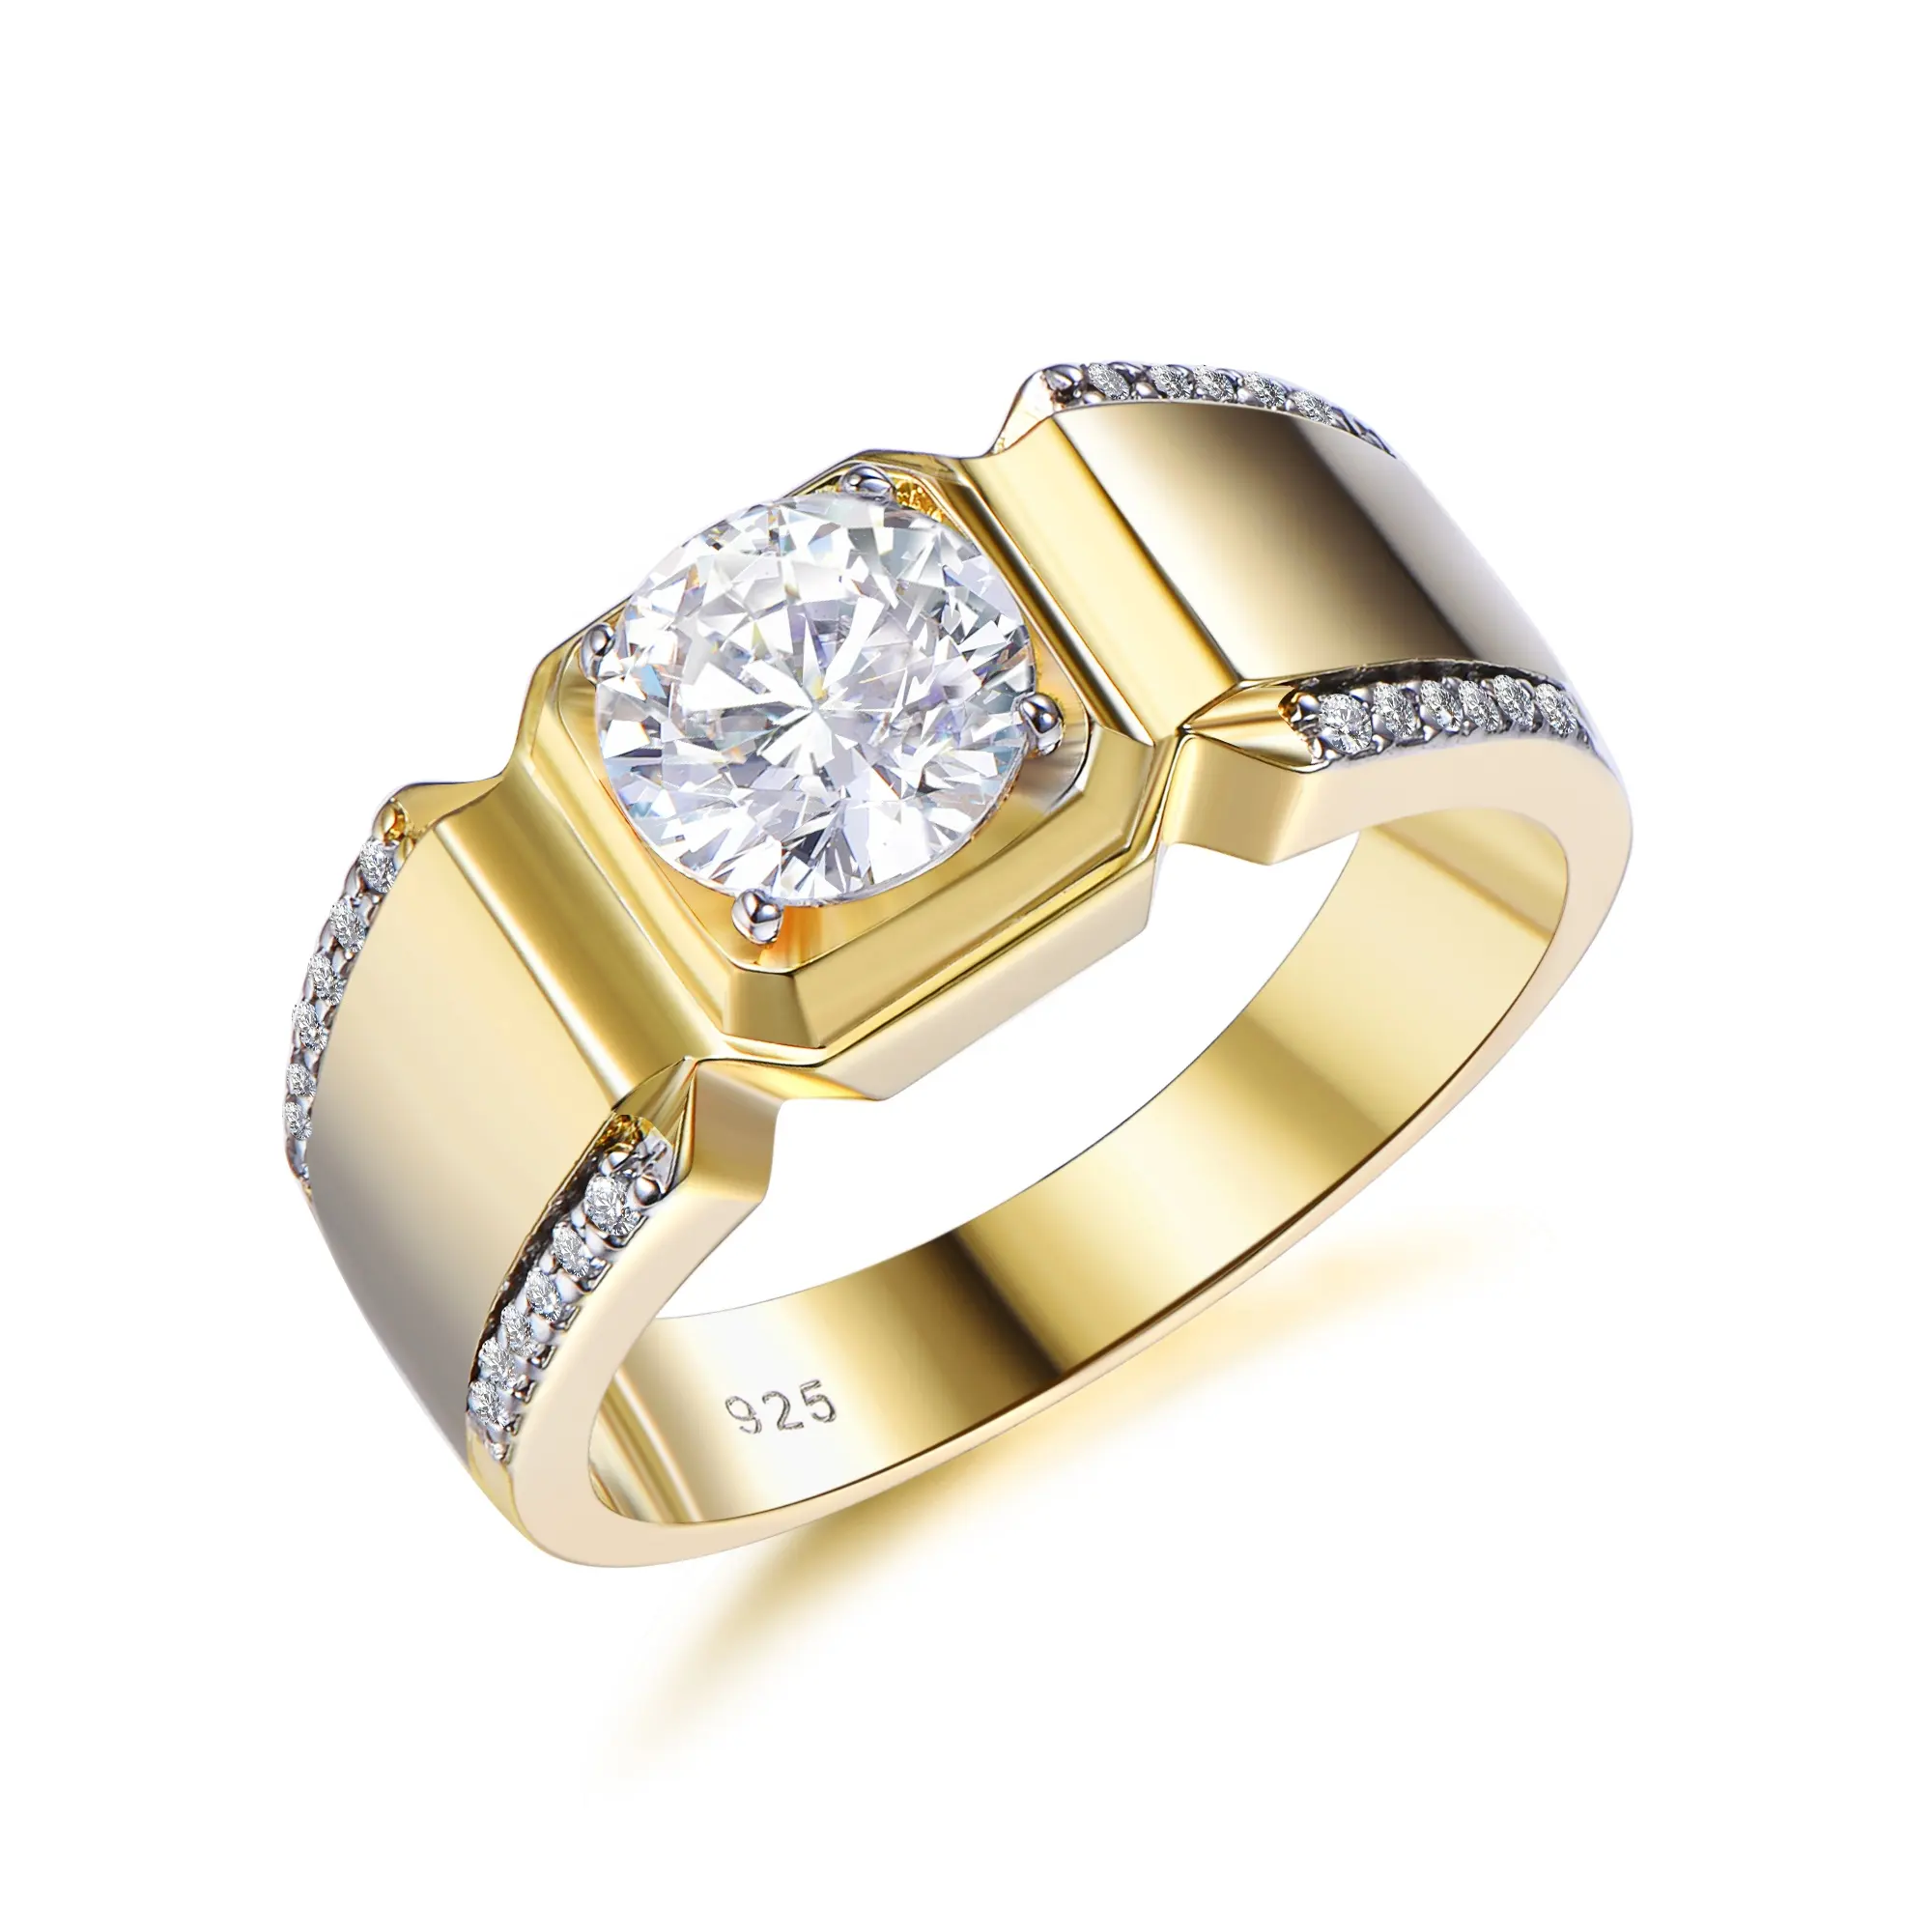 Позолоченные кольца с бриллиантами обручальное кольцо для мужчин, обручальные кольца, ювелирные изделия обручальное кольцо Мужская 18k золота и бриллиантов Обручальное кольцо